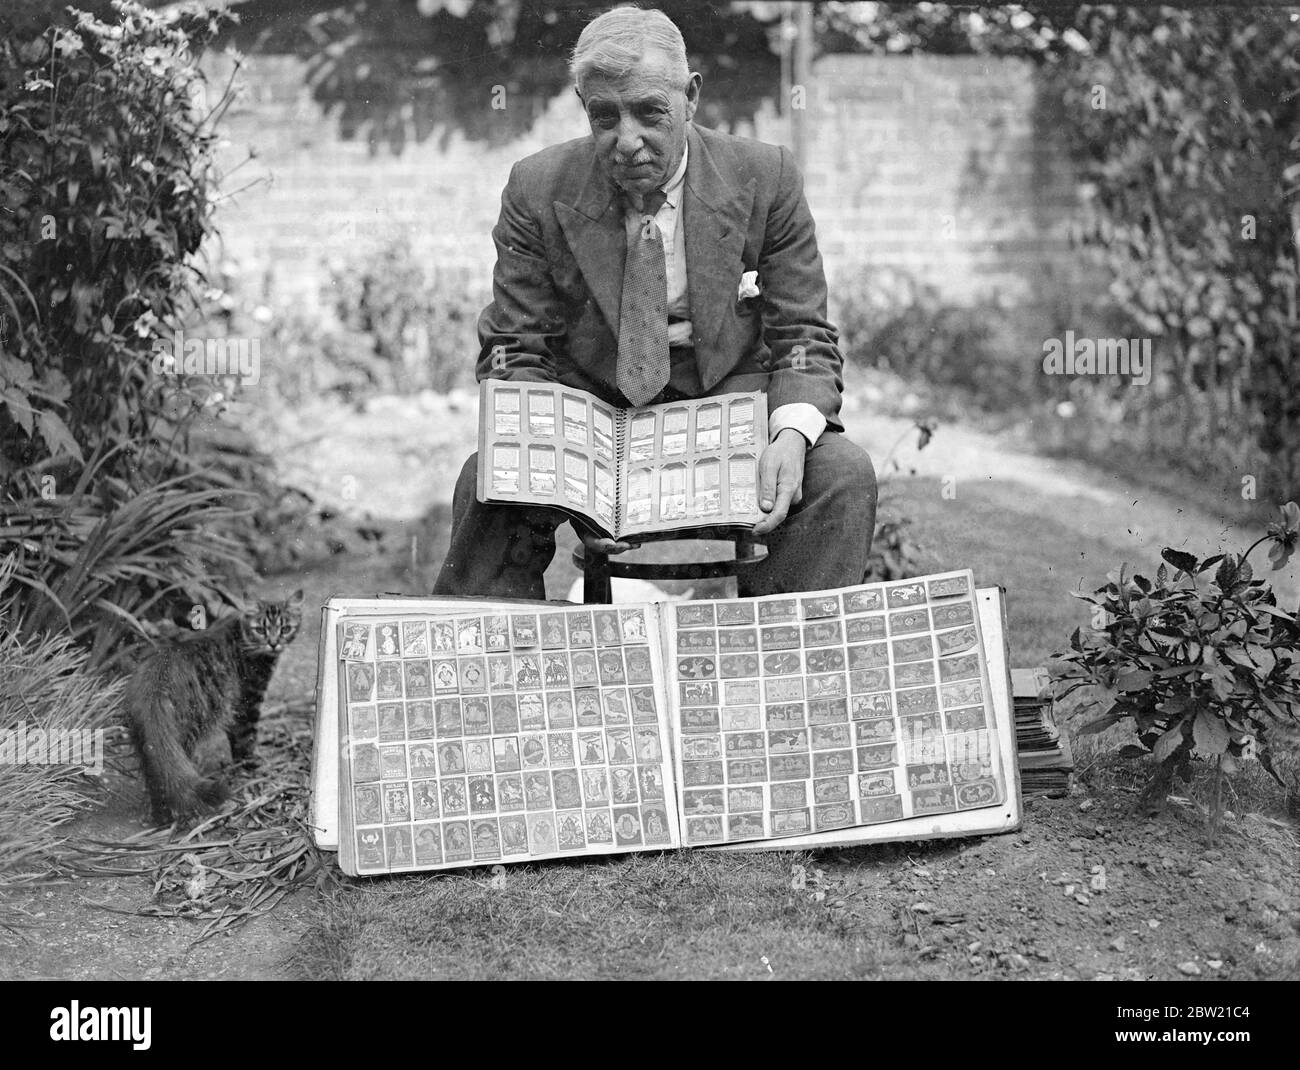 Herr SH Toole mit einigen seiner seltenen Matchbox-Labels in seinem Haus in Southampton wird aufhören, er hat 15,000 Matchbox-Labels in diesen 16 Jahren seit seinem begonnenen Hobby im Jahr 1921 gesammelt. Er plant nun, eine Ausstellung von Match Box-Label-Sammlungen in London zu veranstalten. Bis 13. August 1937. Stockfoto